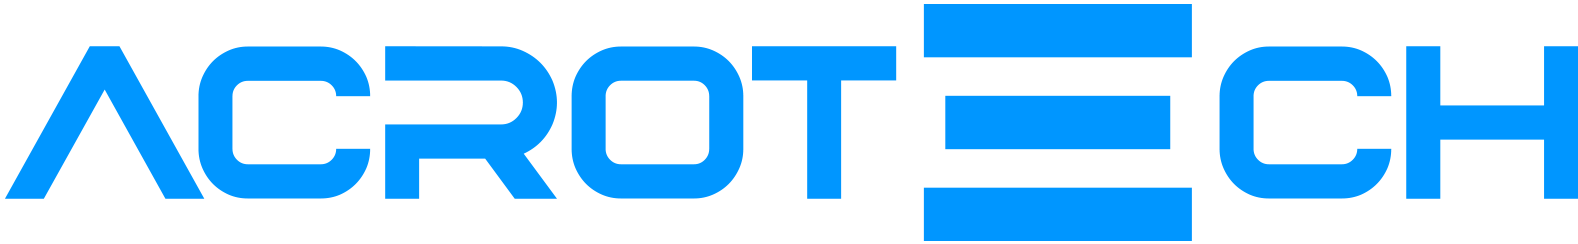 Acrotech-logo